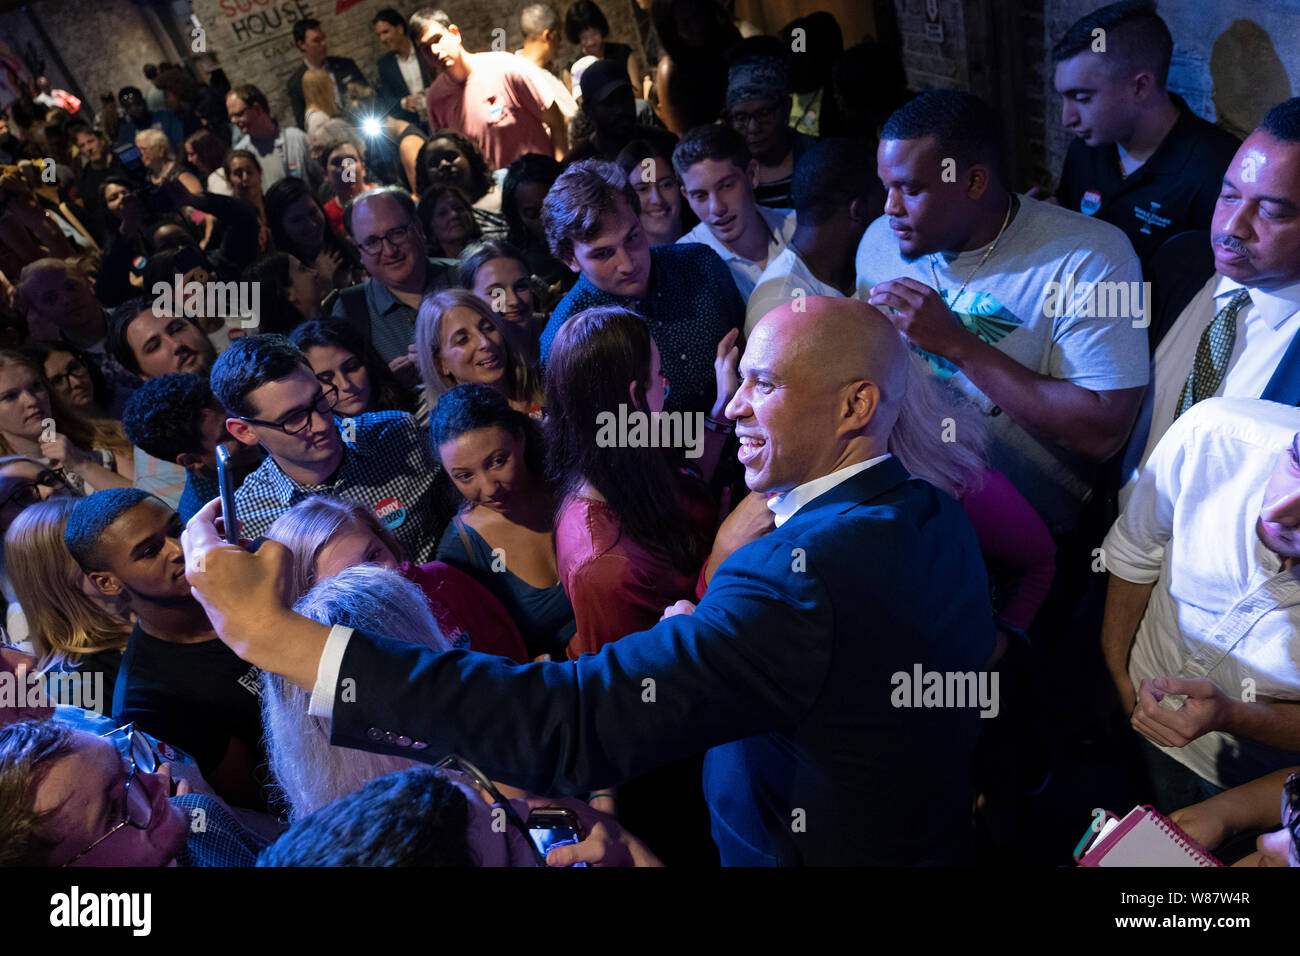 El candidato presidencial demócrata Cory Booker (D-NJ) aparece durante un evento en la subida de Filadelfia Filadelfia Fillmore. Foto de stock